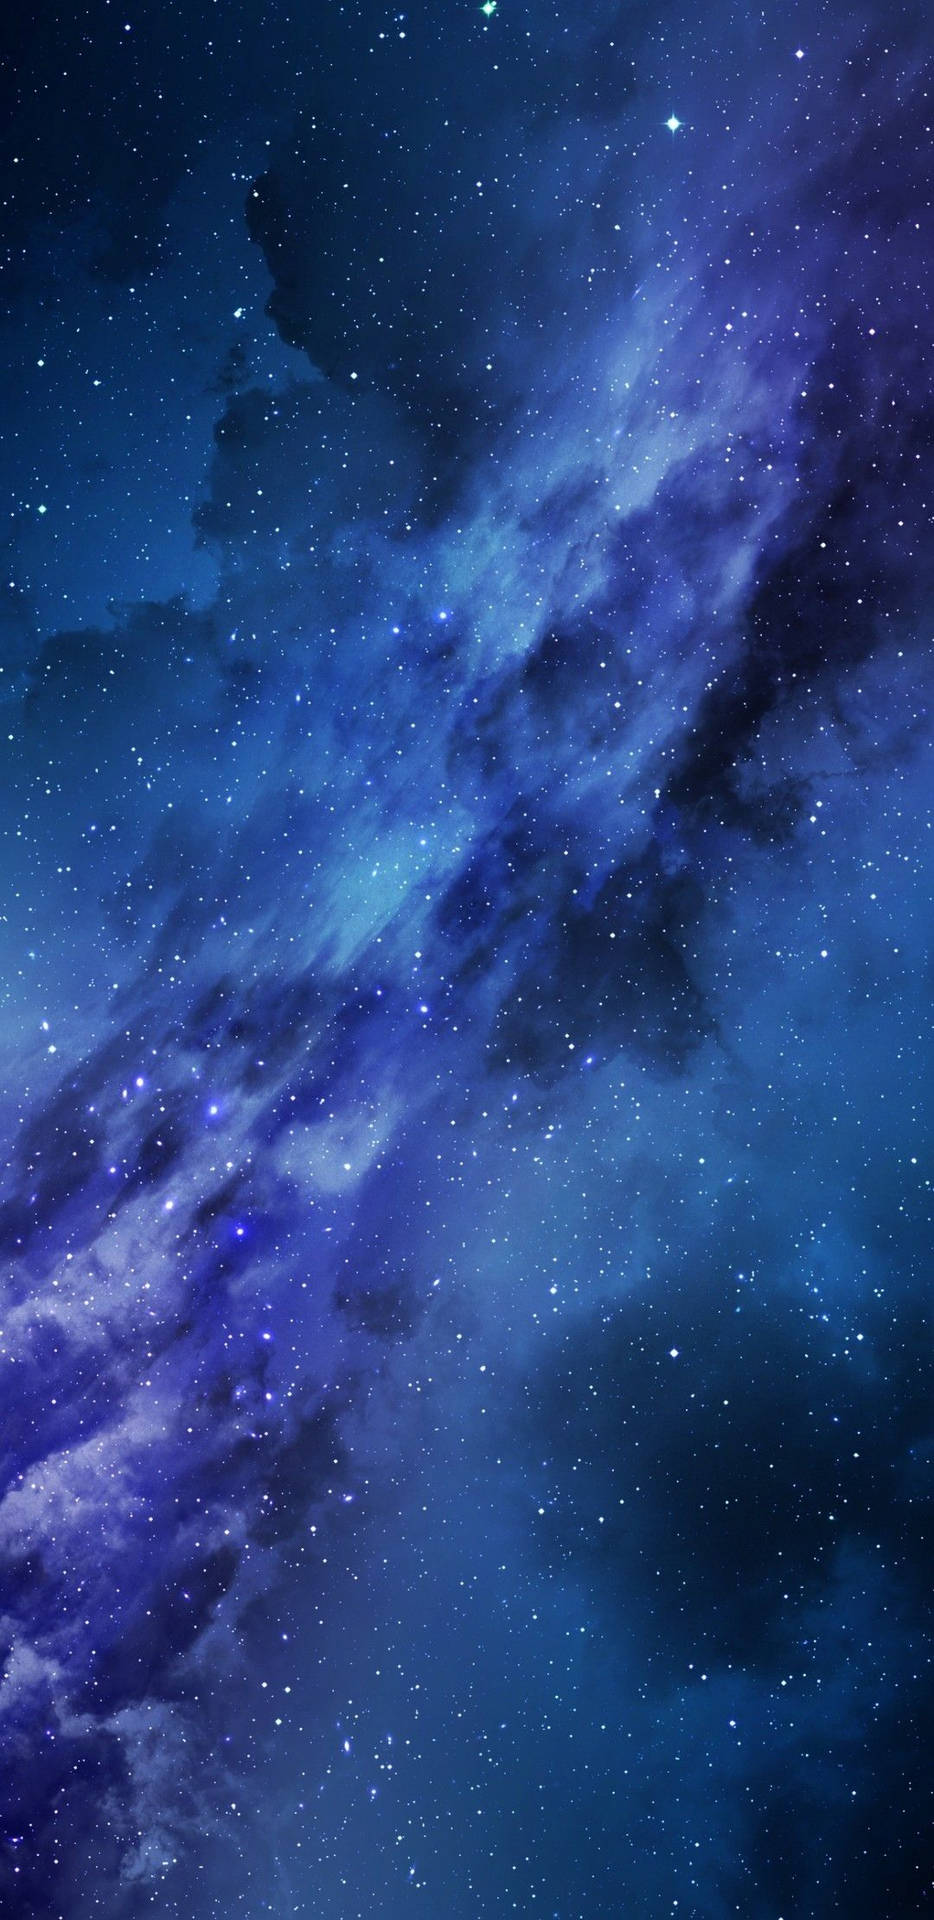 Tải xuống Starry Blue Sky vào đêm Universal Wallpaper | Wallpapers.com để sở hữu ngay một bức ảnh nền xinh đẹp và đầy mê hoặc. Với một không gian đầy sao và bầu trời đầy lãng mạn, bạn sẽ được đắm chìm trong những cảm giác tuyệt vời về đêm tối và vũ trụ bao la.